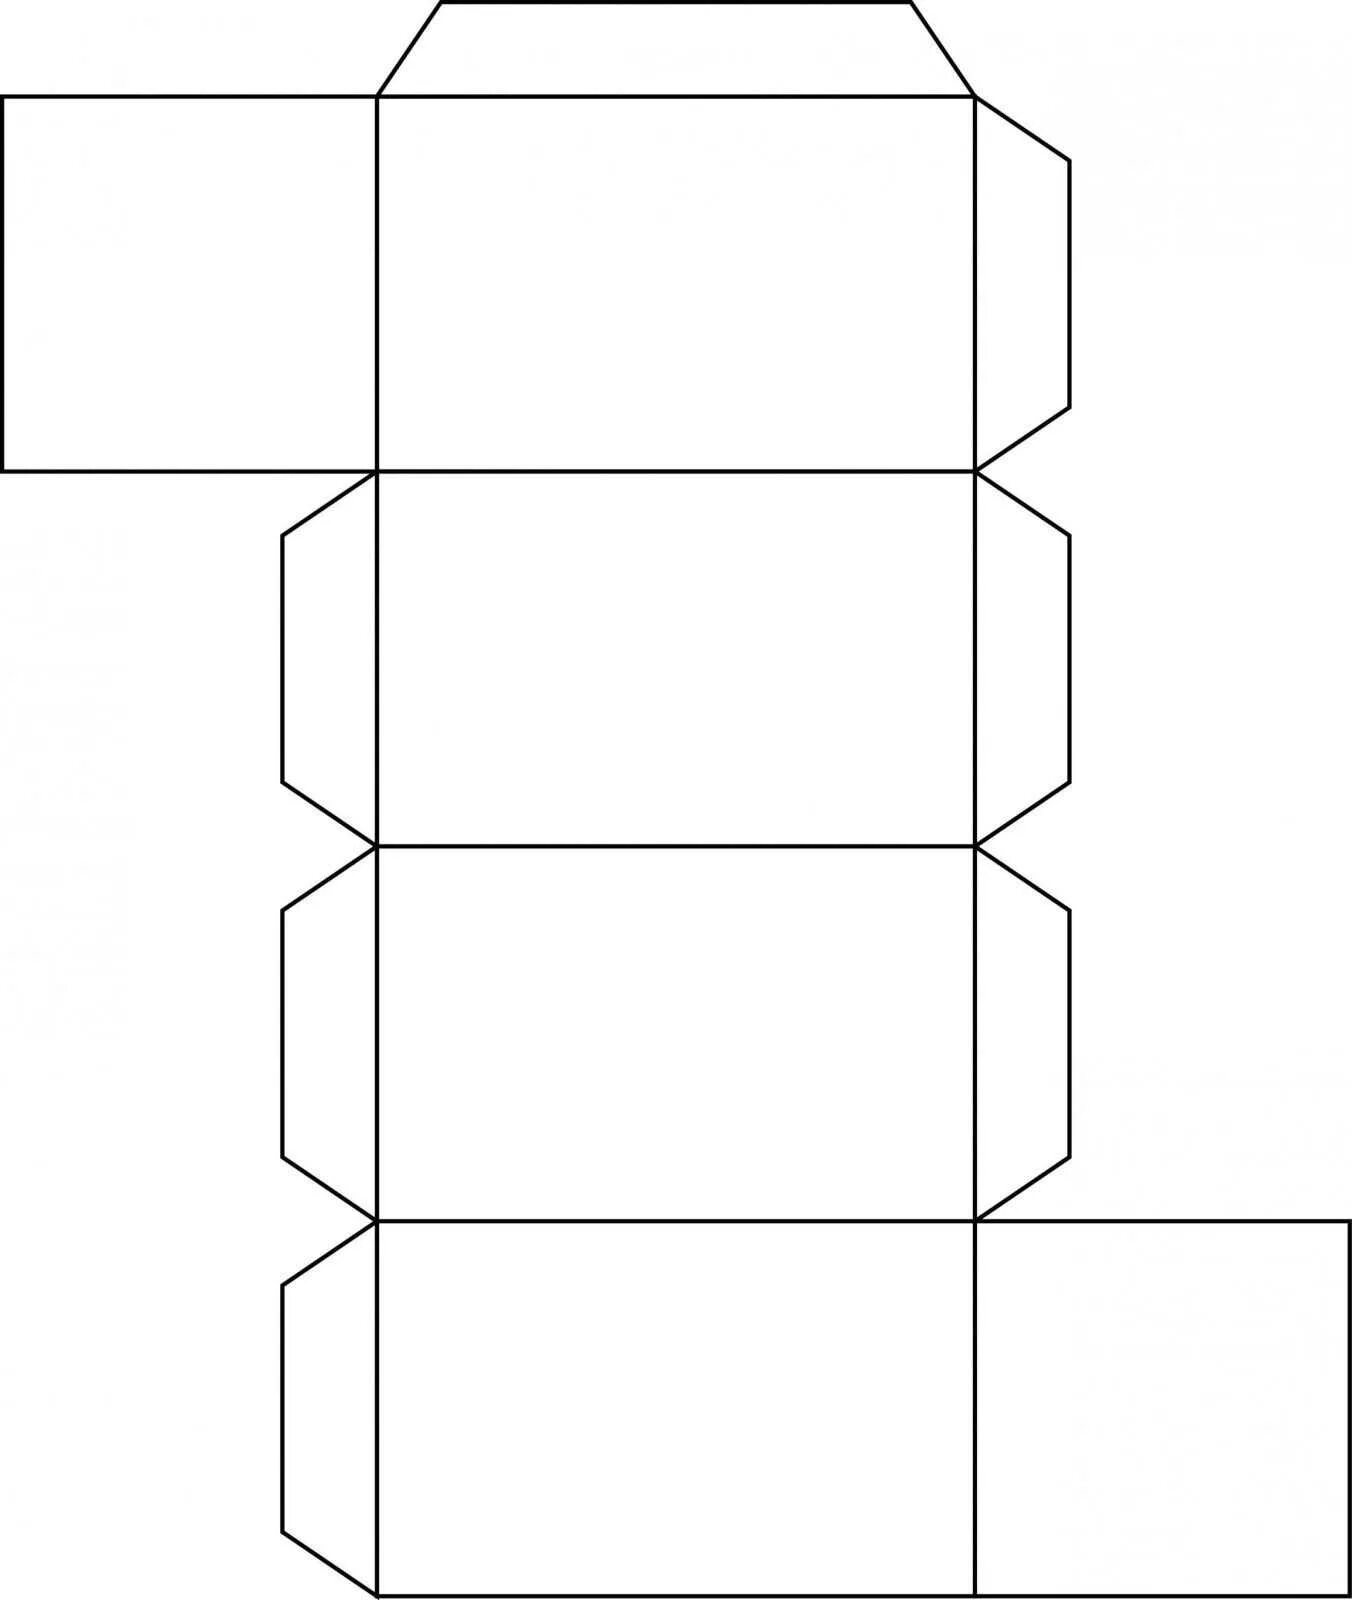 Шаблон куба для склеивания. Развертки Куба и параллелепипеда для склеивания. Параллелепипед развертка для склеивания а4. Прямоугольный параллелепипед развертка для склеивания а4. Развертка прямоугольного параллелепипеда а4.